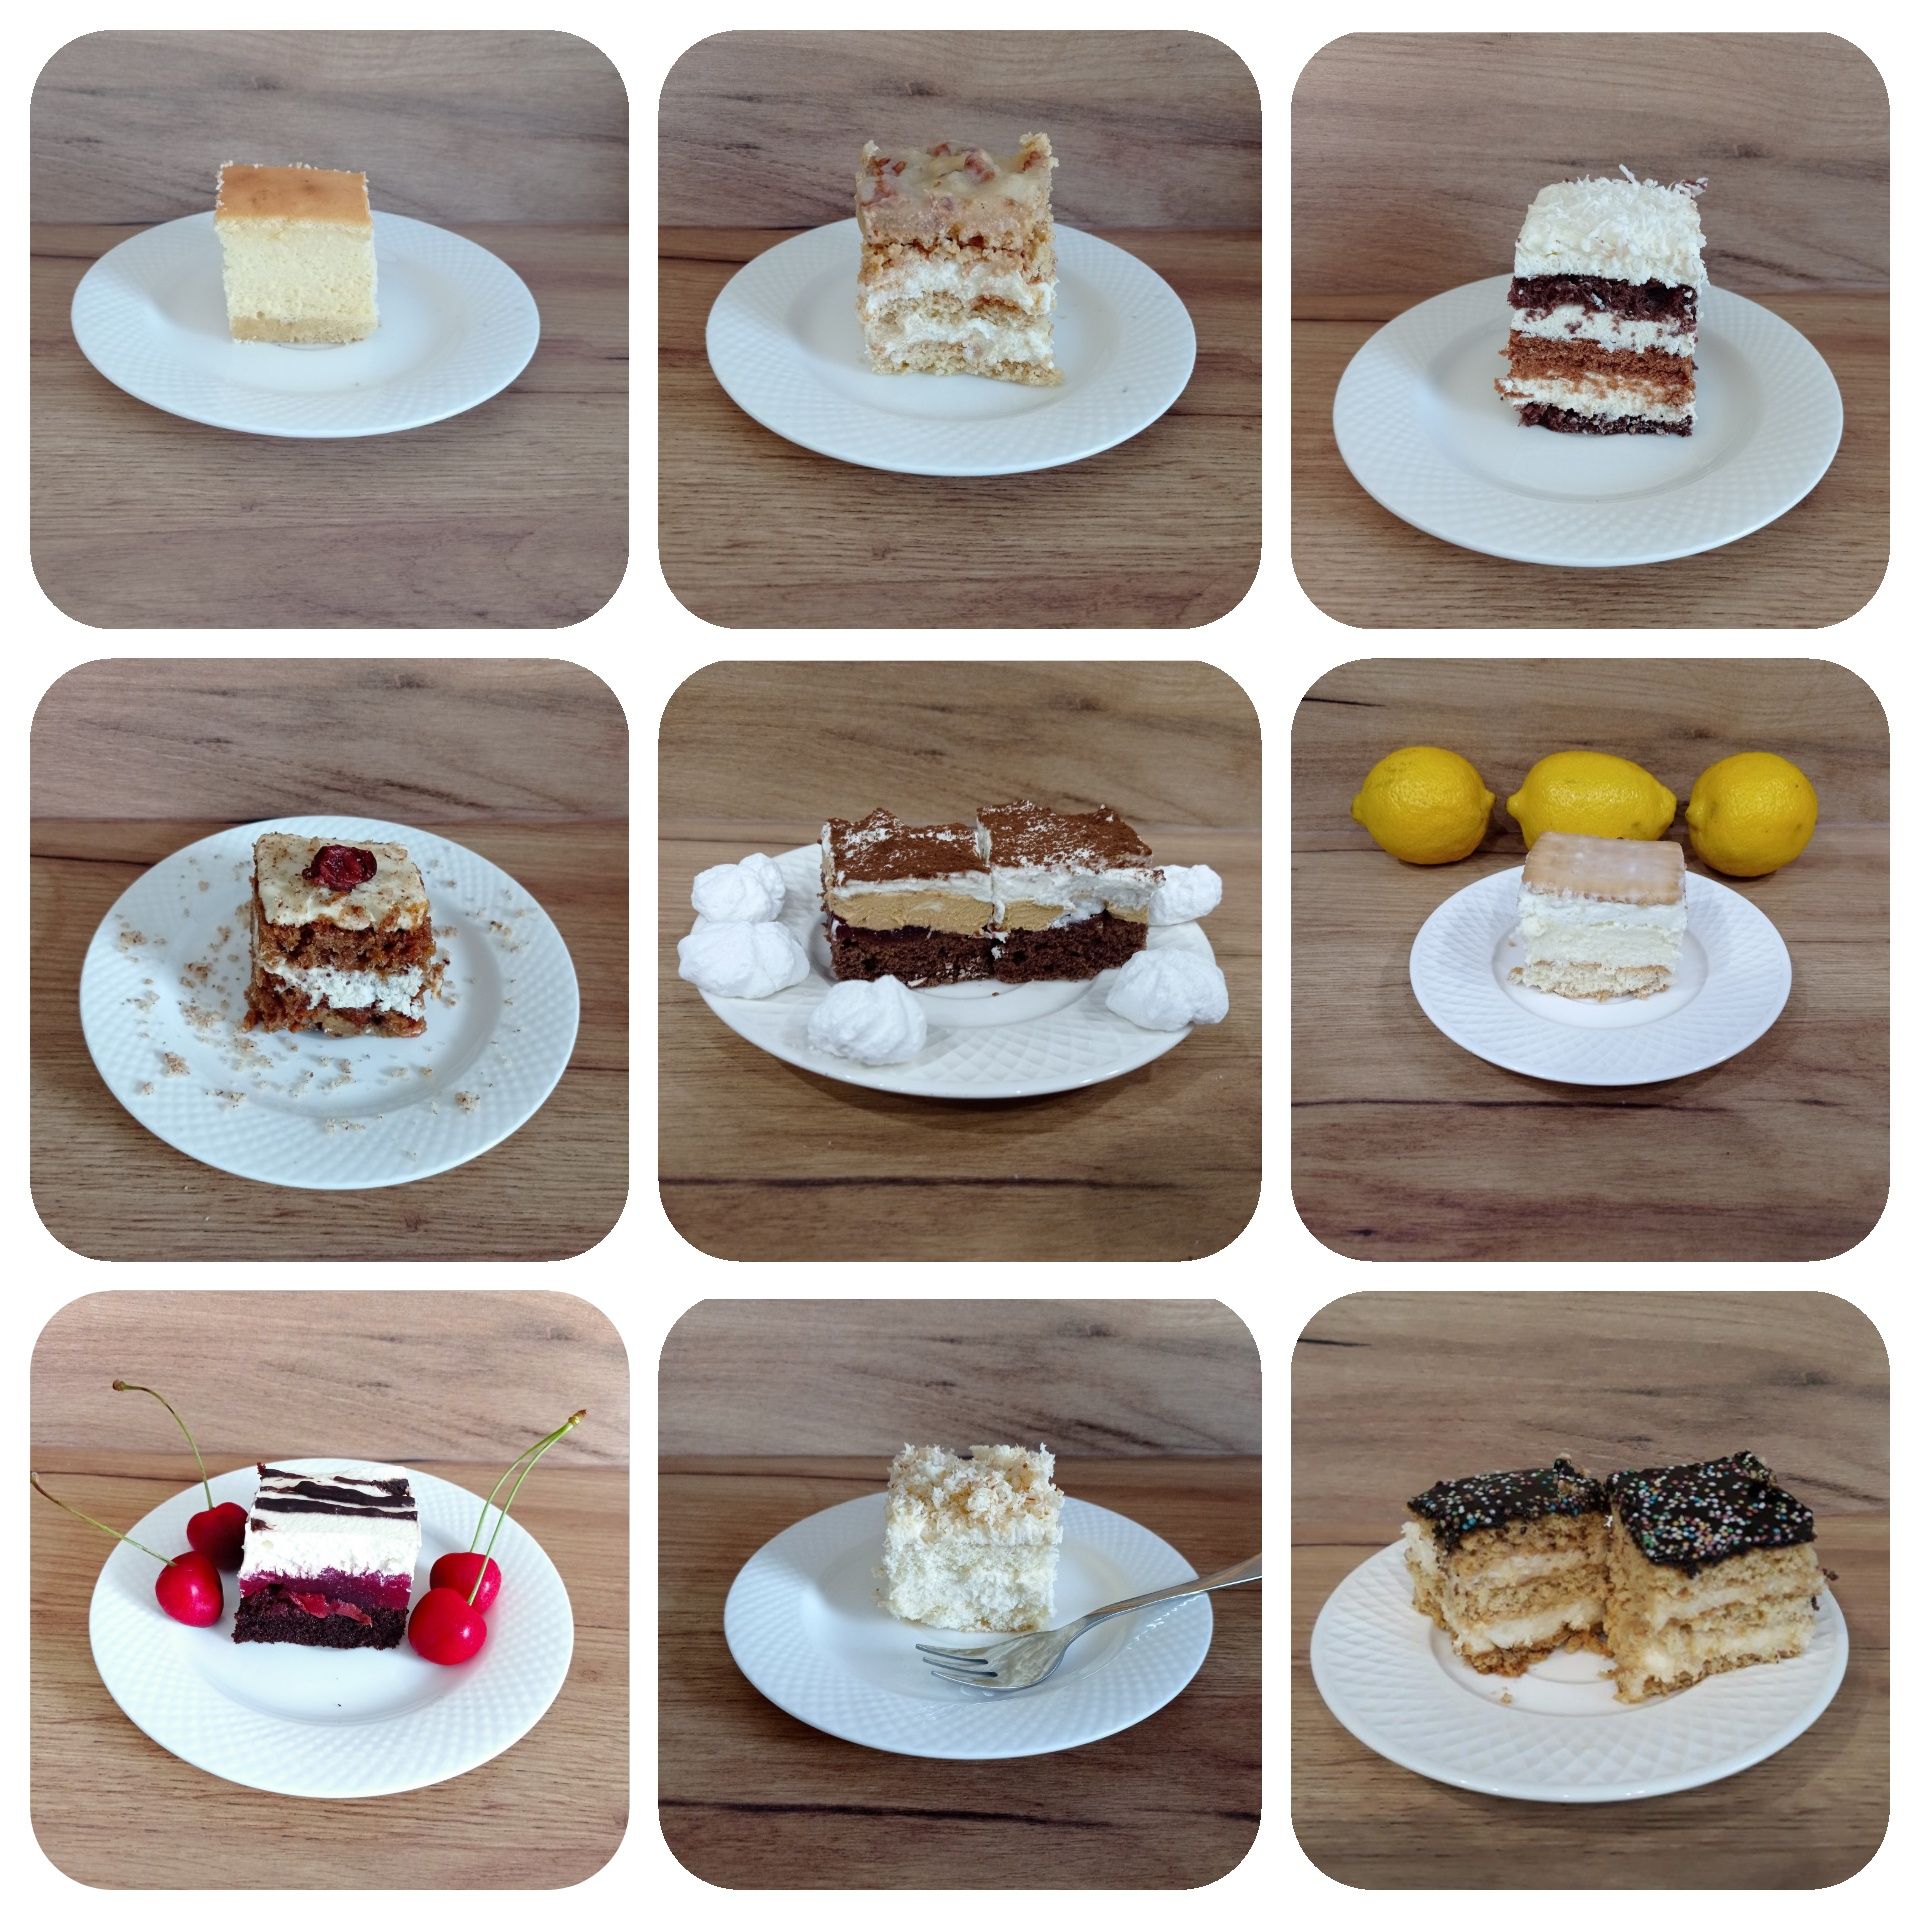 Domowe słodkości: ciasta, torty, bezy, mini deserki, rurki. Zapraszam